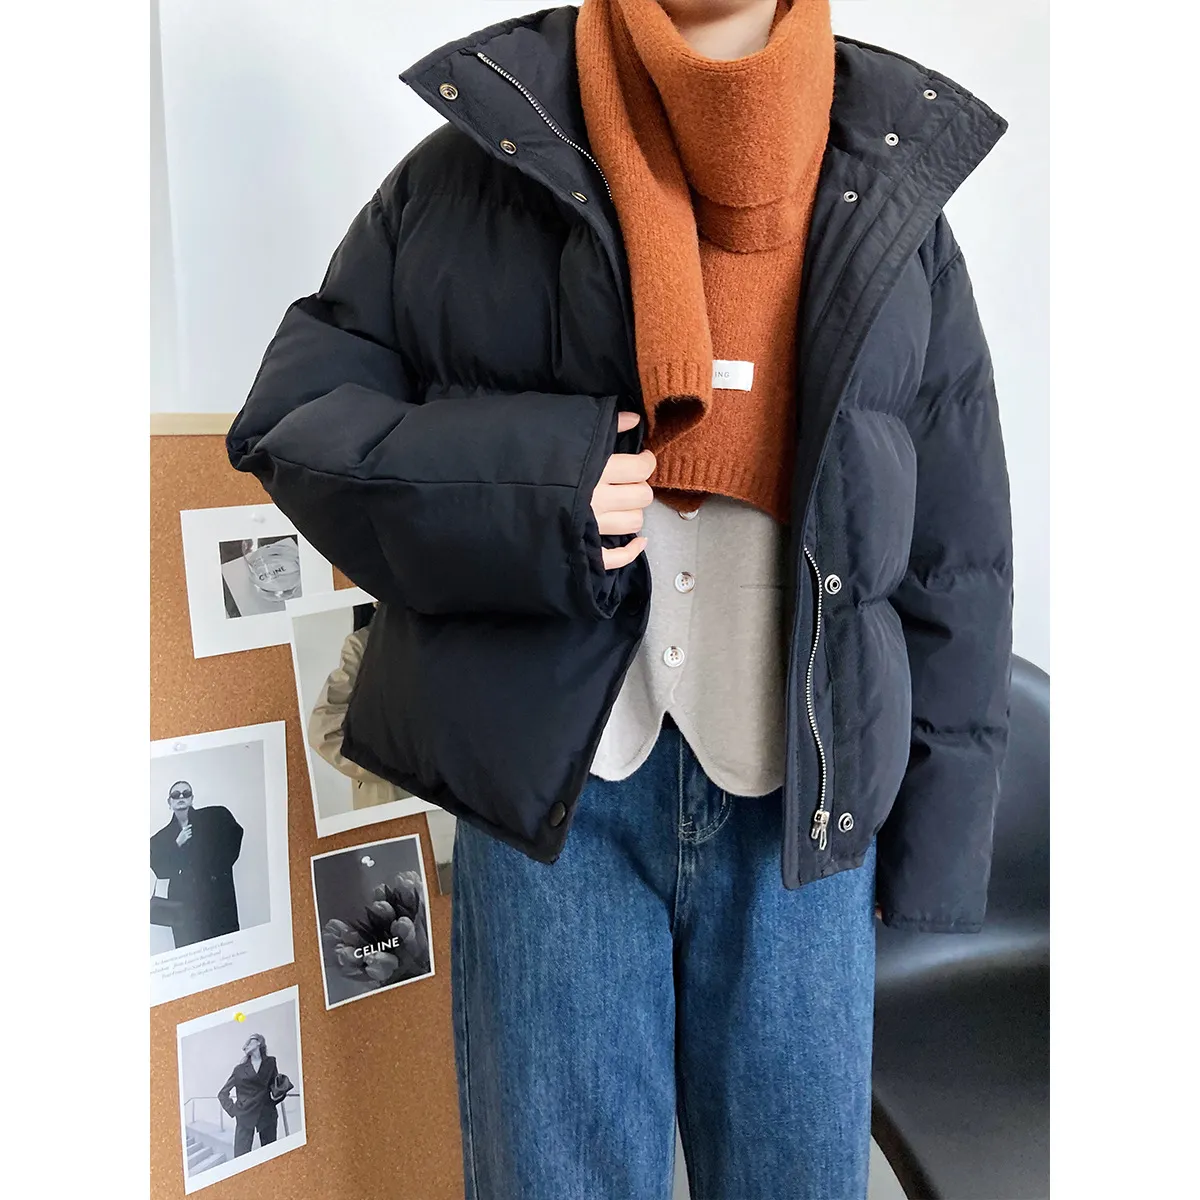 Luxi vestiti invernali coreani nuova moda colletto alla coreana vestiti di pane gonfio vestiti di cotone larghi e caldi vestiti di cotone corto da do